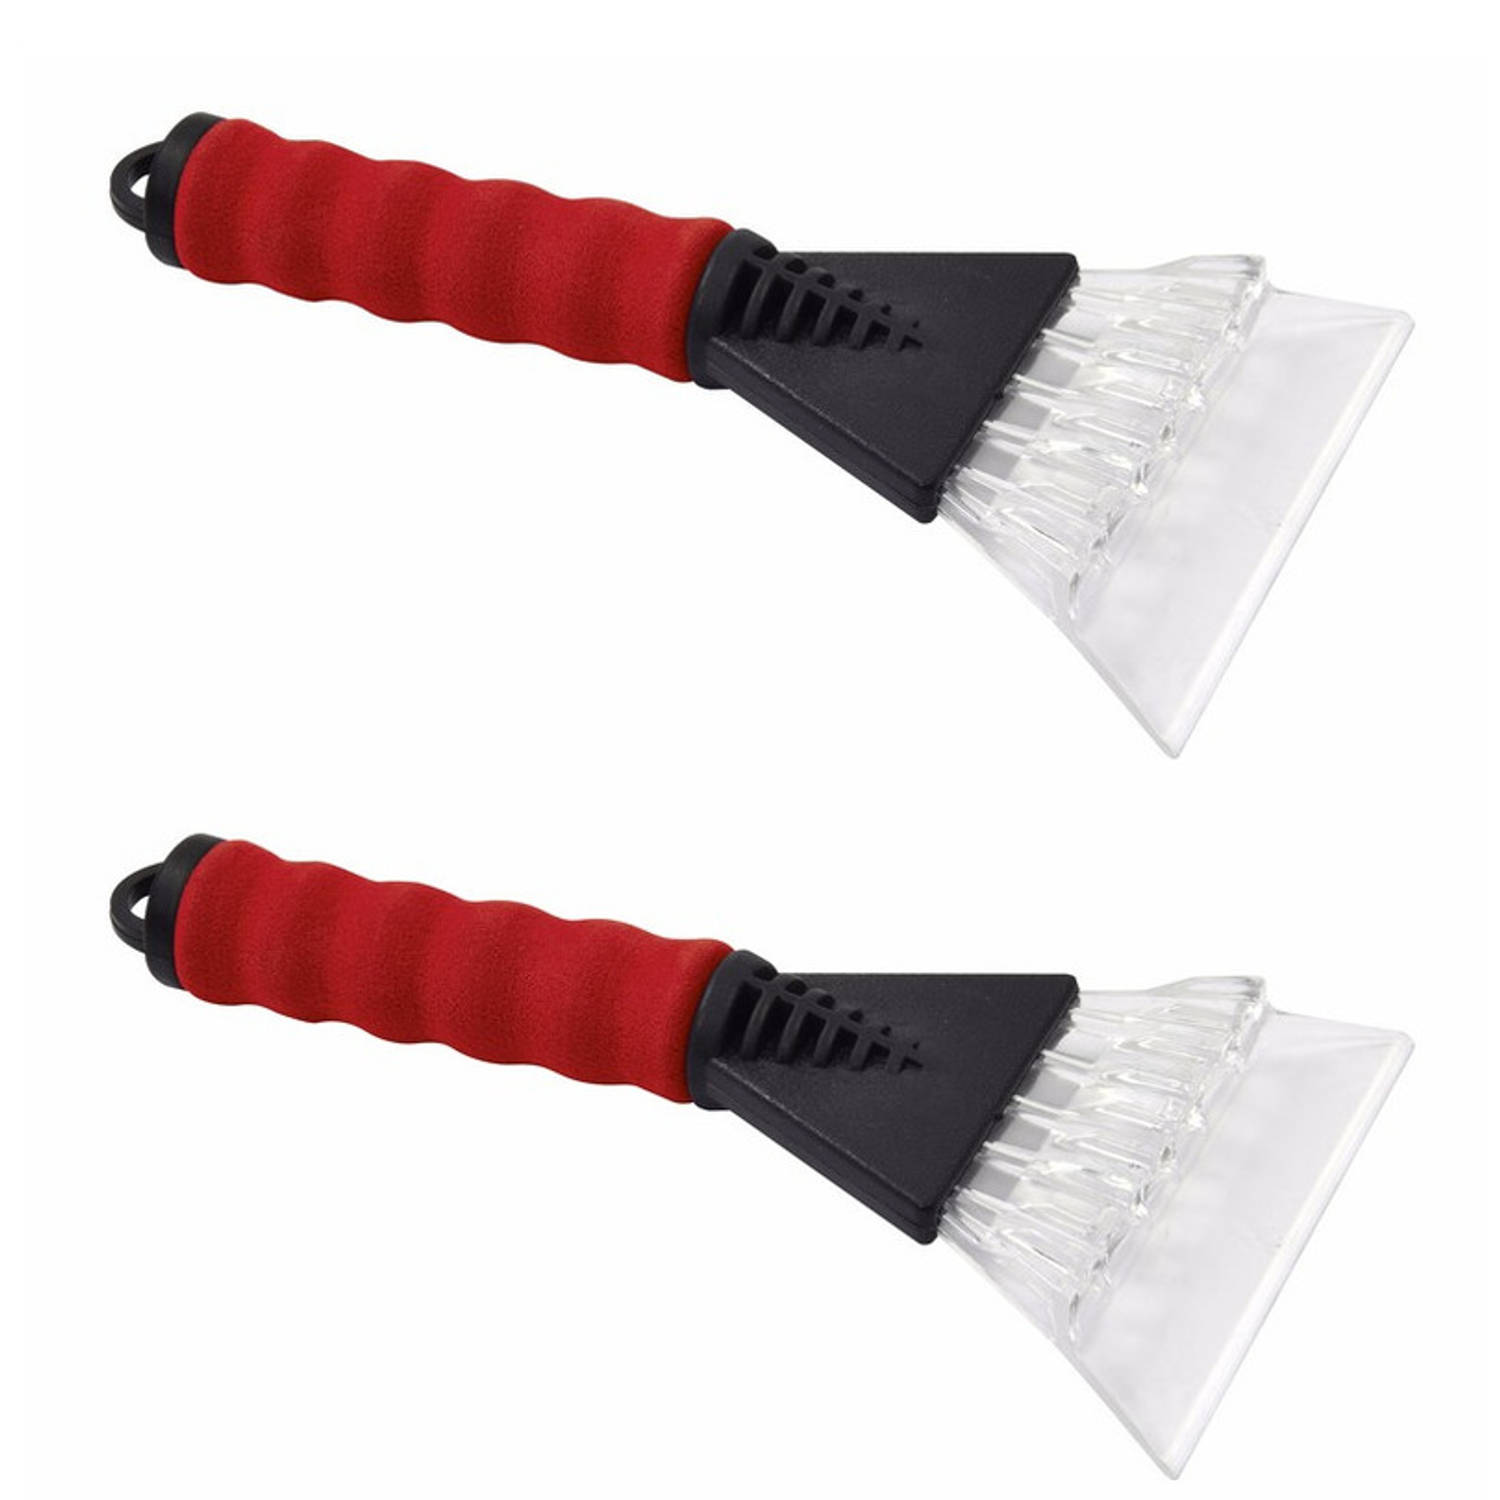 2x IJskrabbers met zacht handvat rood 25 cm - Autoruiten ijskrabbers - Auto winter accessoires